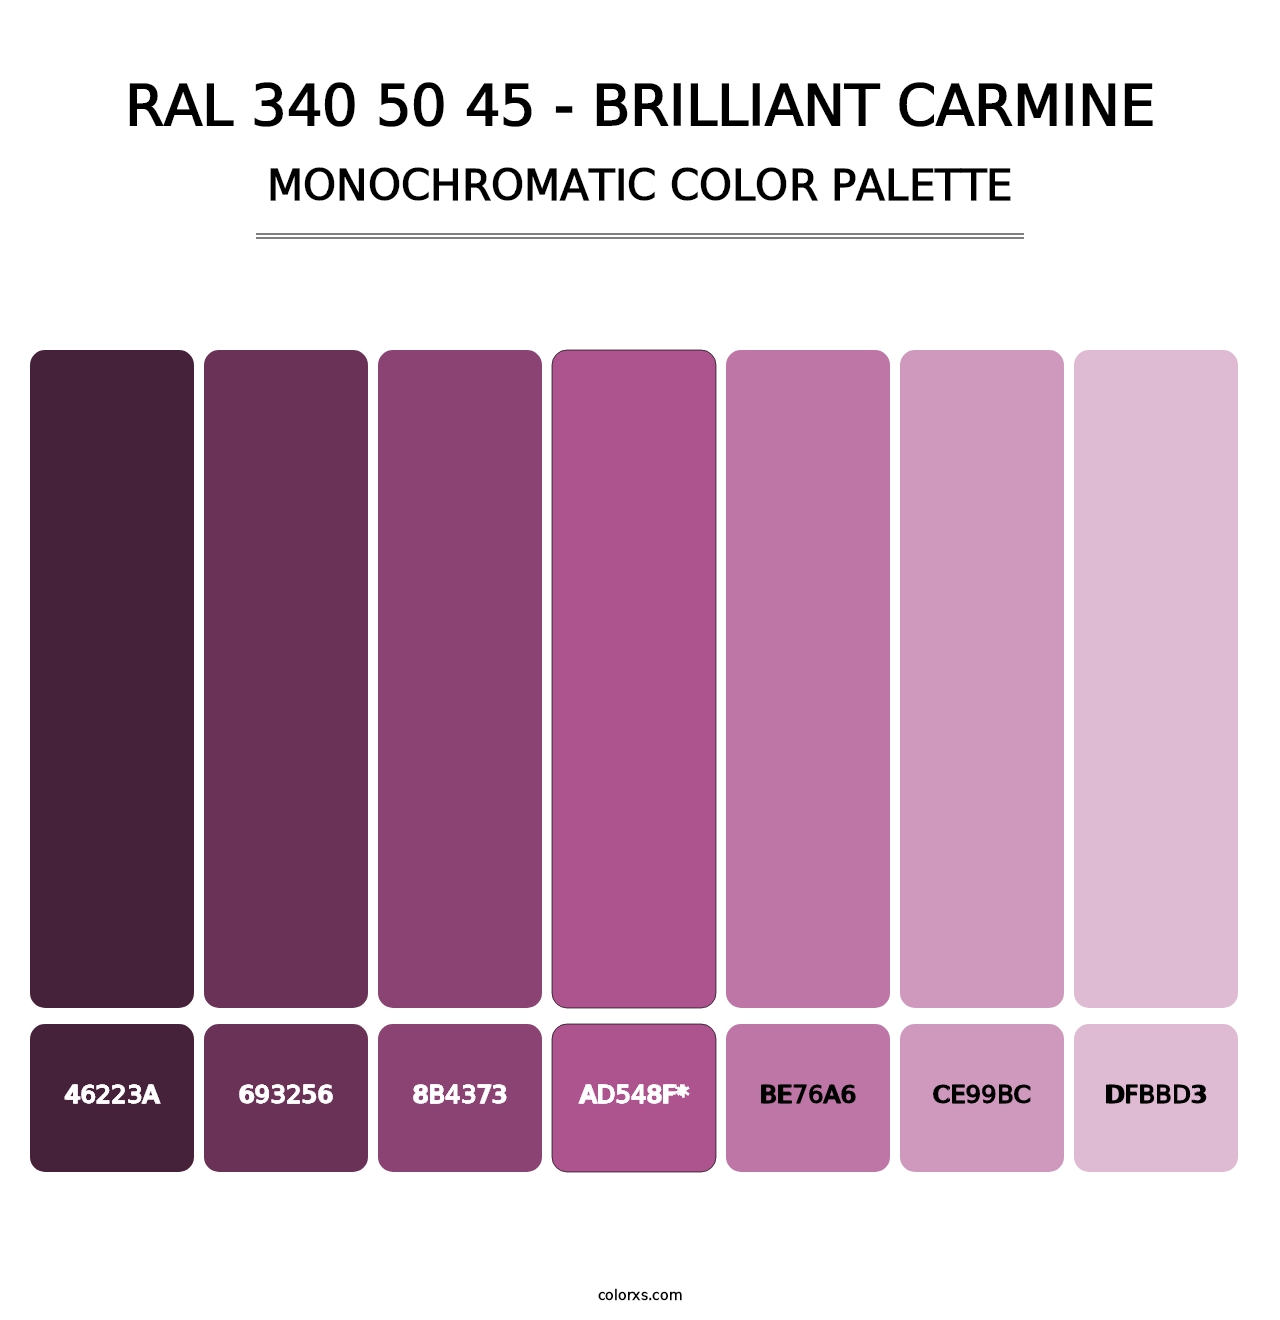 RAL 340 50 45 - Brilliant Carmine - Monochromatic Color Palette